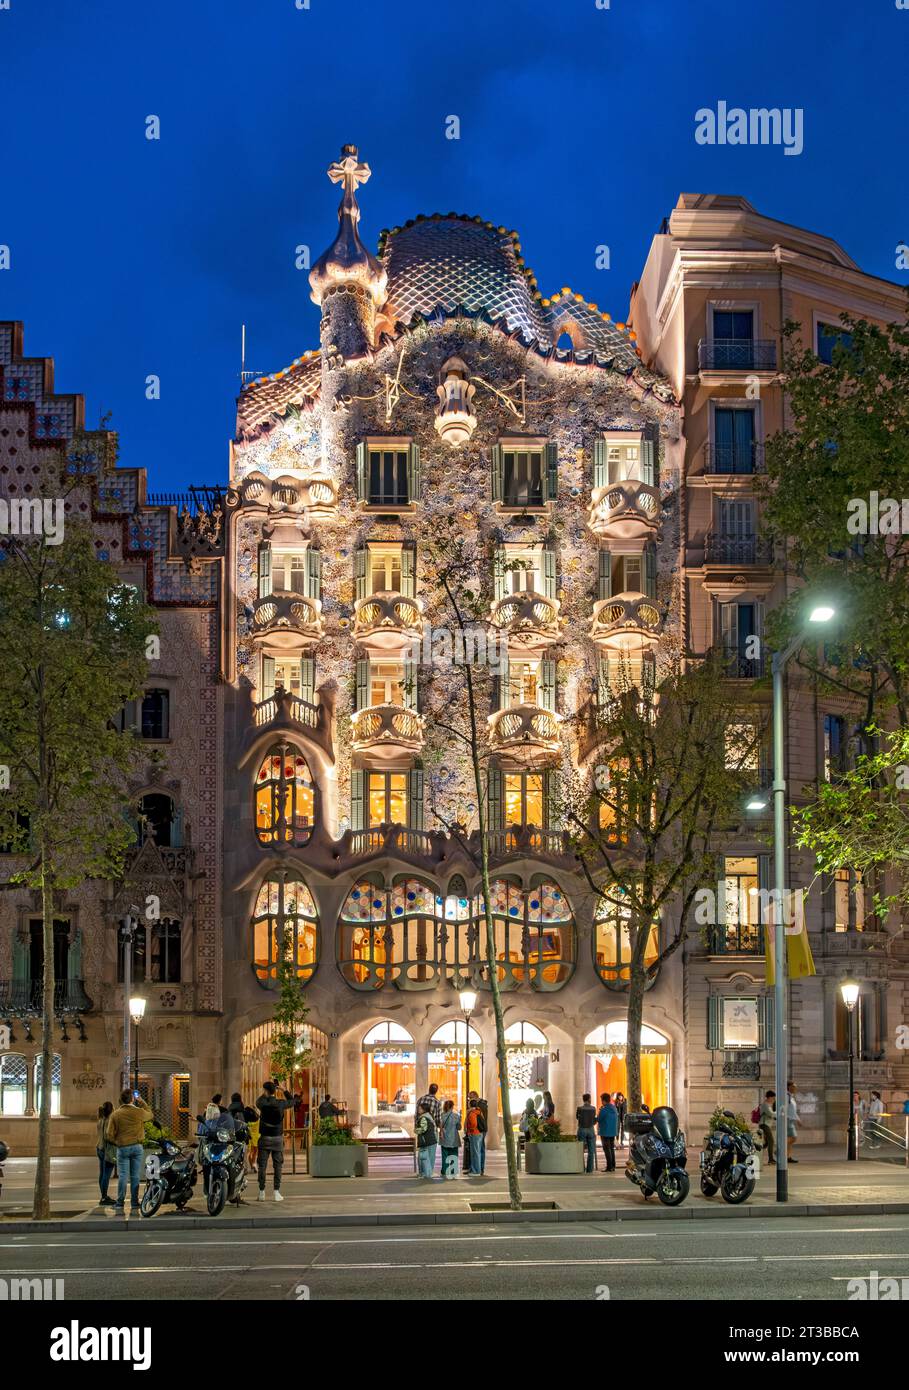 Vue nocturne de Casa Batllo par Antoni Gaudi, Barcelone, Espagne Banque D'Images